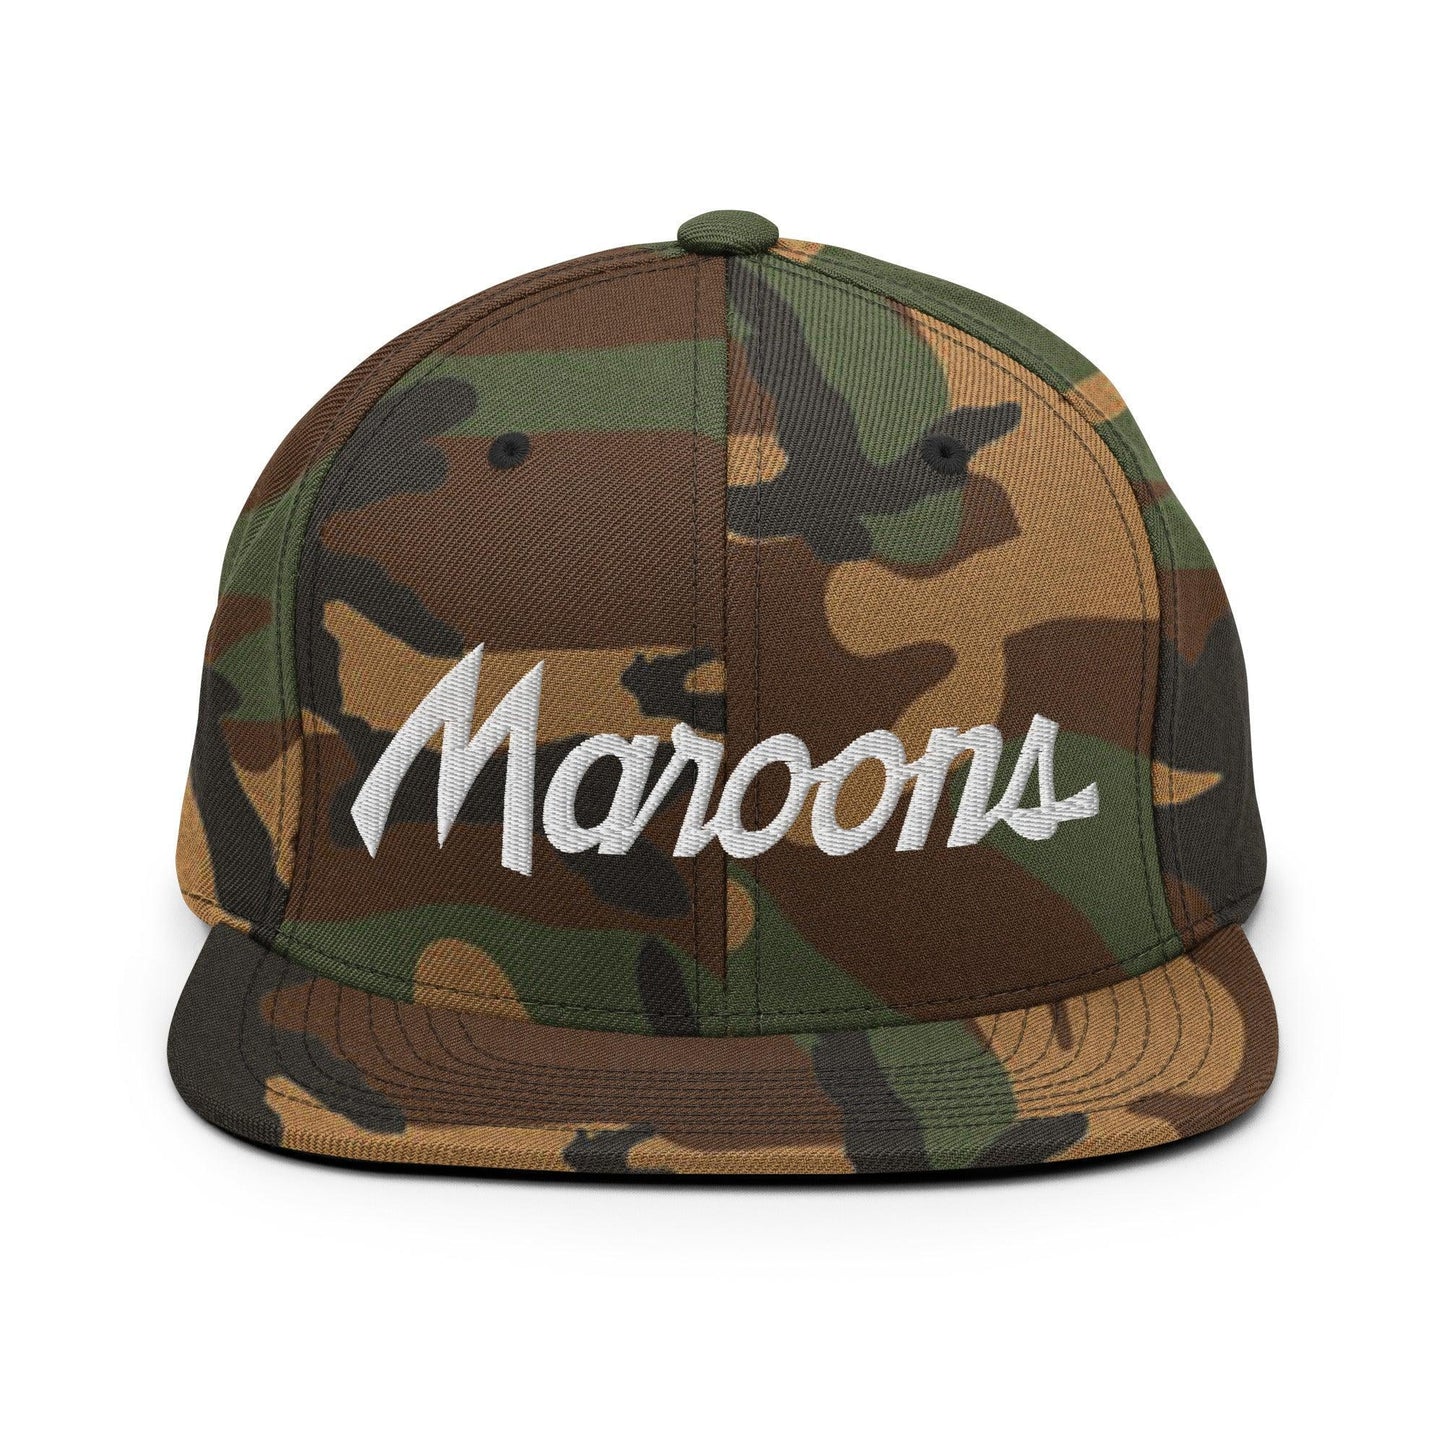 Maroons School Mascot Script Snapback Hat Green Camo